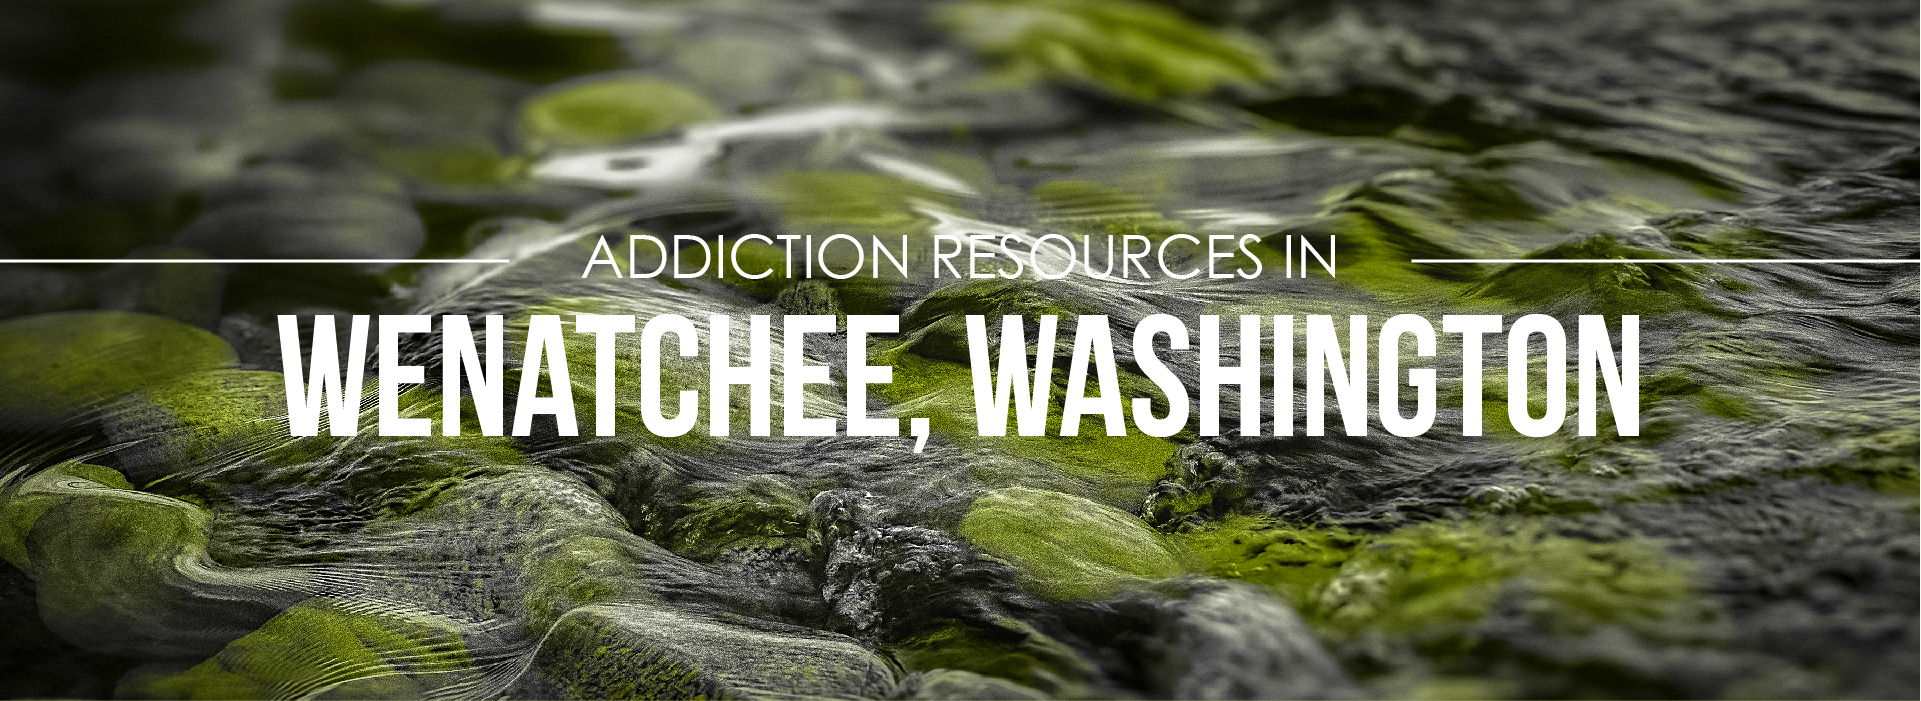 Wenatche Washington Addiction Information